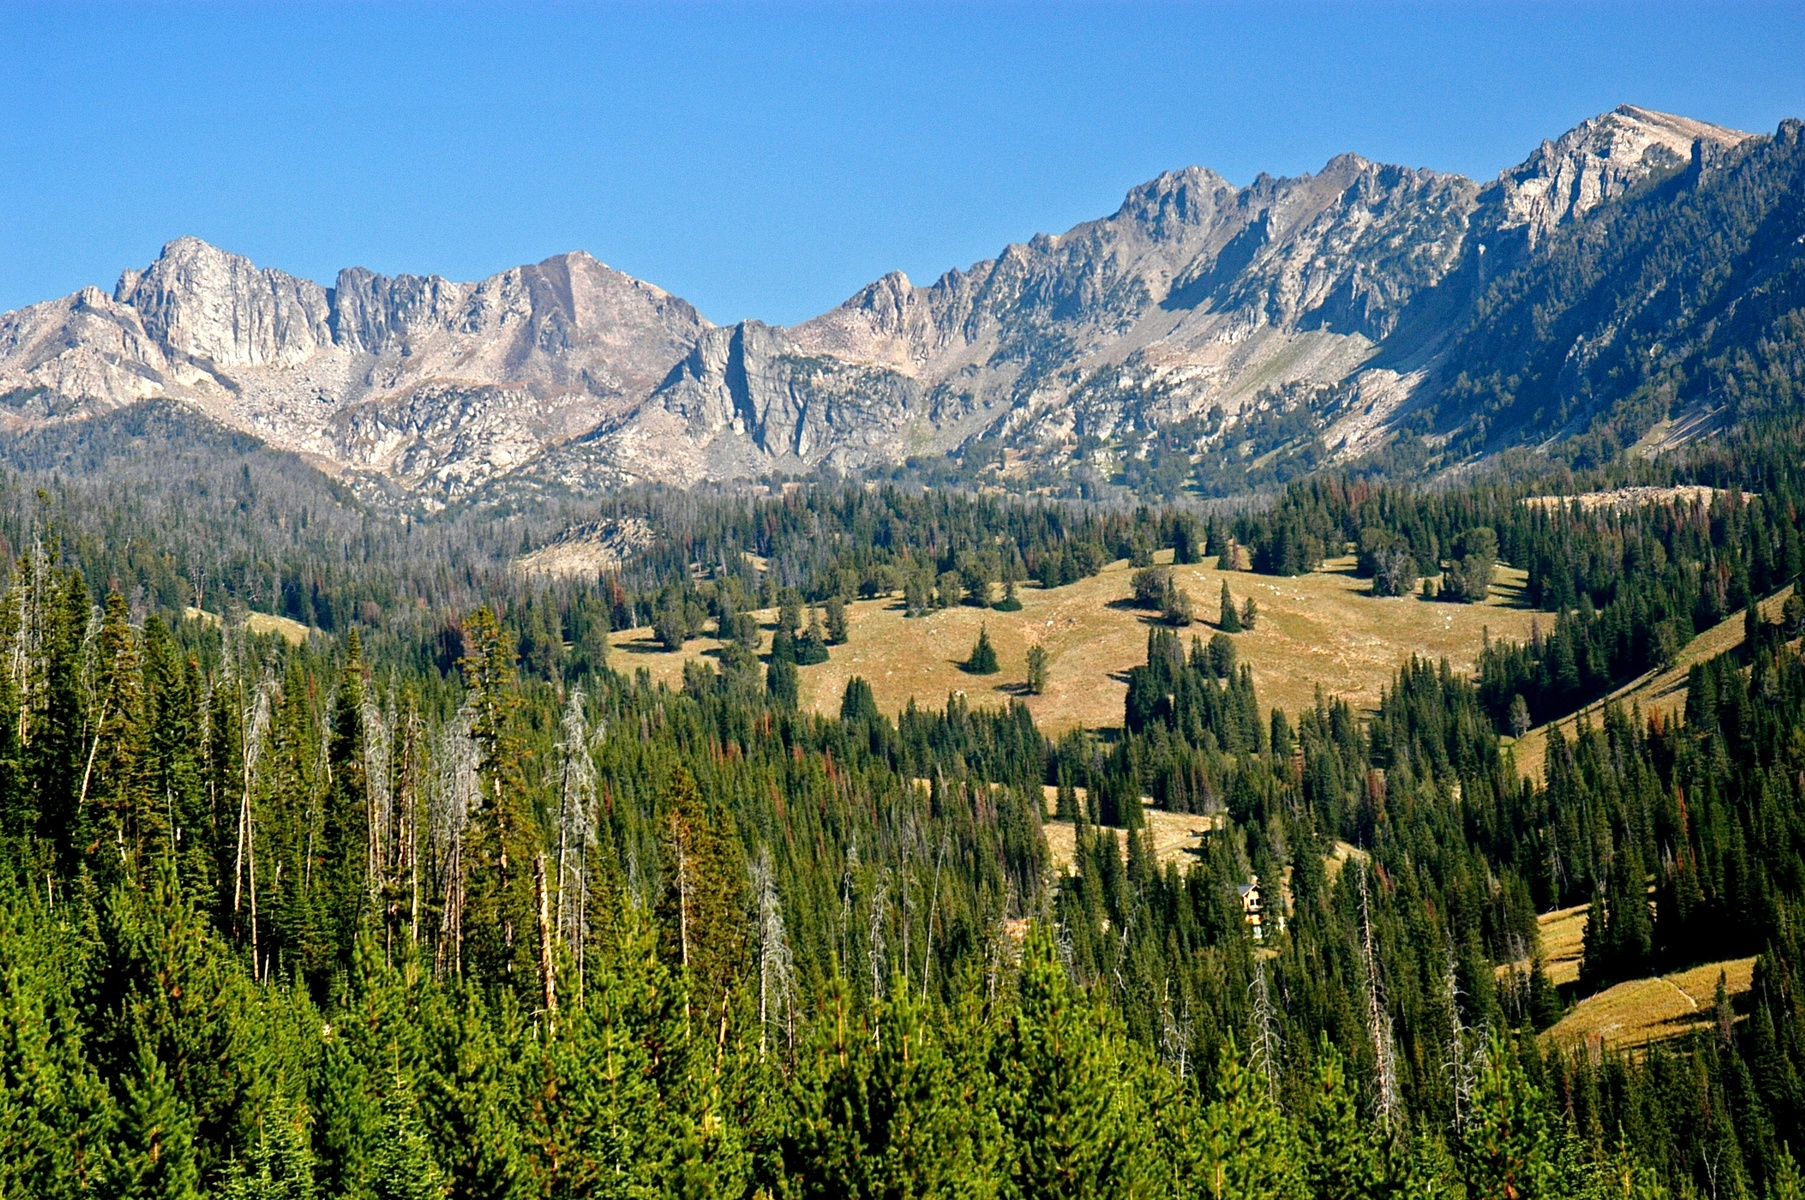 Spanish Peaks Wilderness, Montana